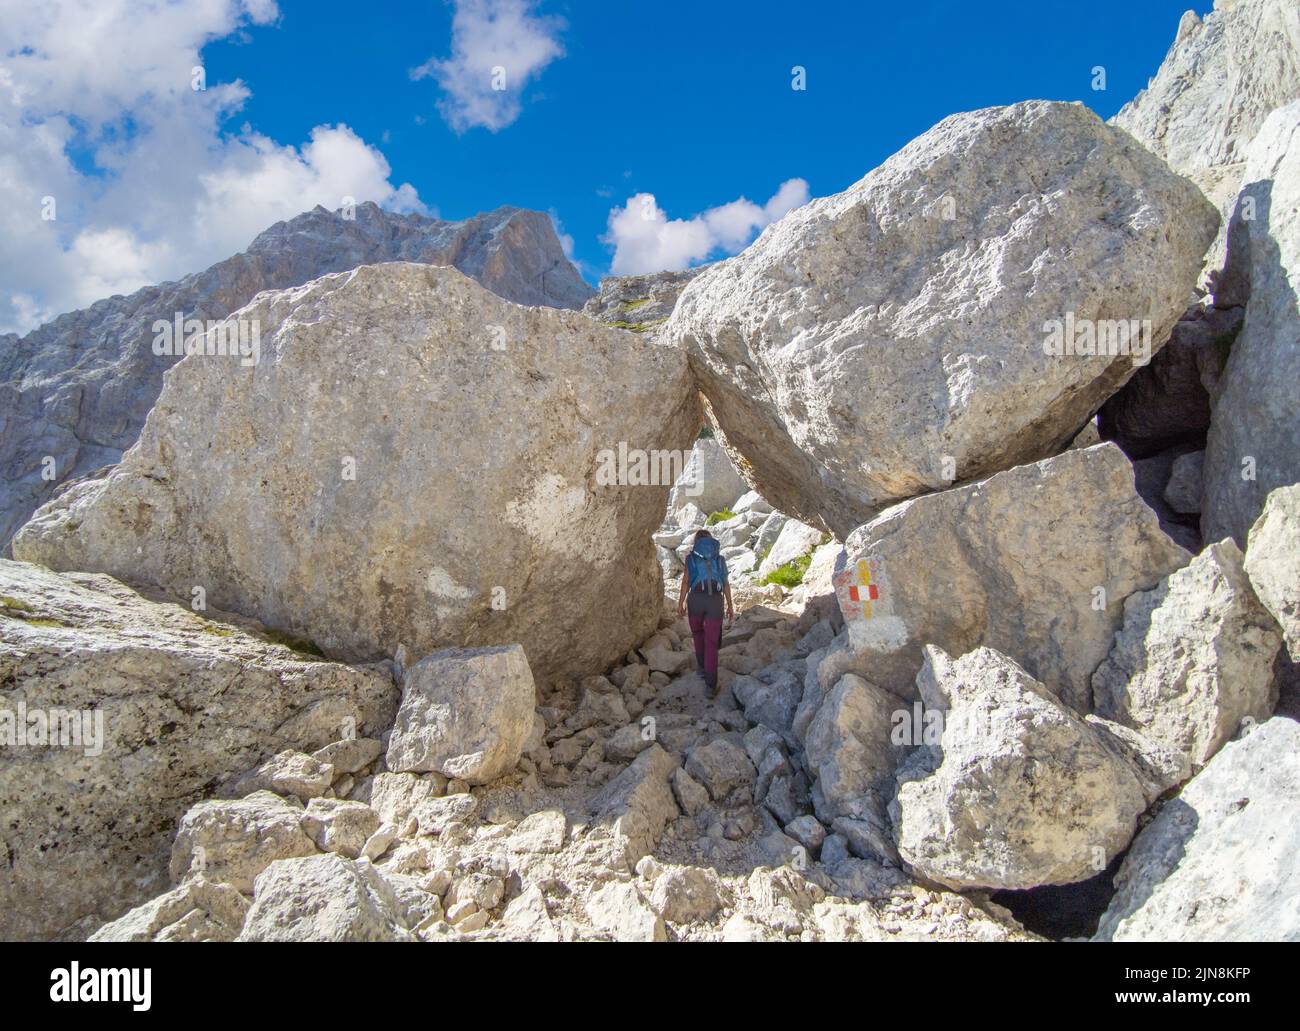 Gran Sasso (Italy) - The extreme trekking to Vetta Orientale of Corno Grande, 2902 meters in Abruzzo region, with Ferrata Ricci, glacier of Calderone Stock Photo